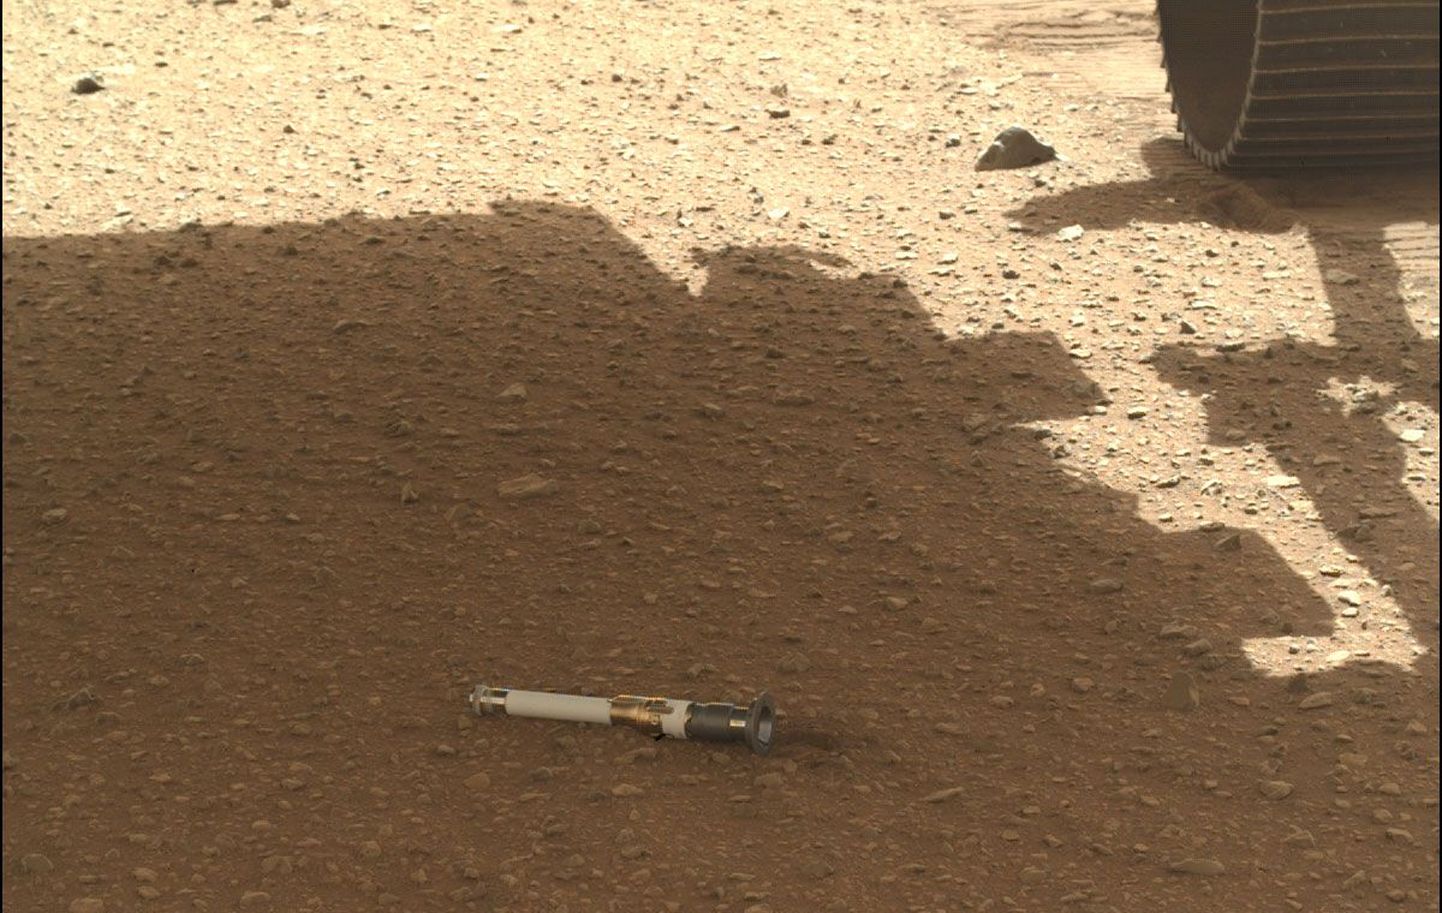 Titaanist kapslis on Marsikulguri Perseveranse võetud pinnasproovid, mida aastate pärast saab Maal uurima hakata, kui kapslile uus kosmosemissioon järele saadetakse.